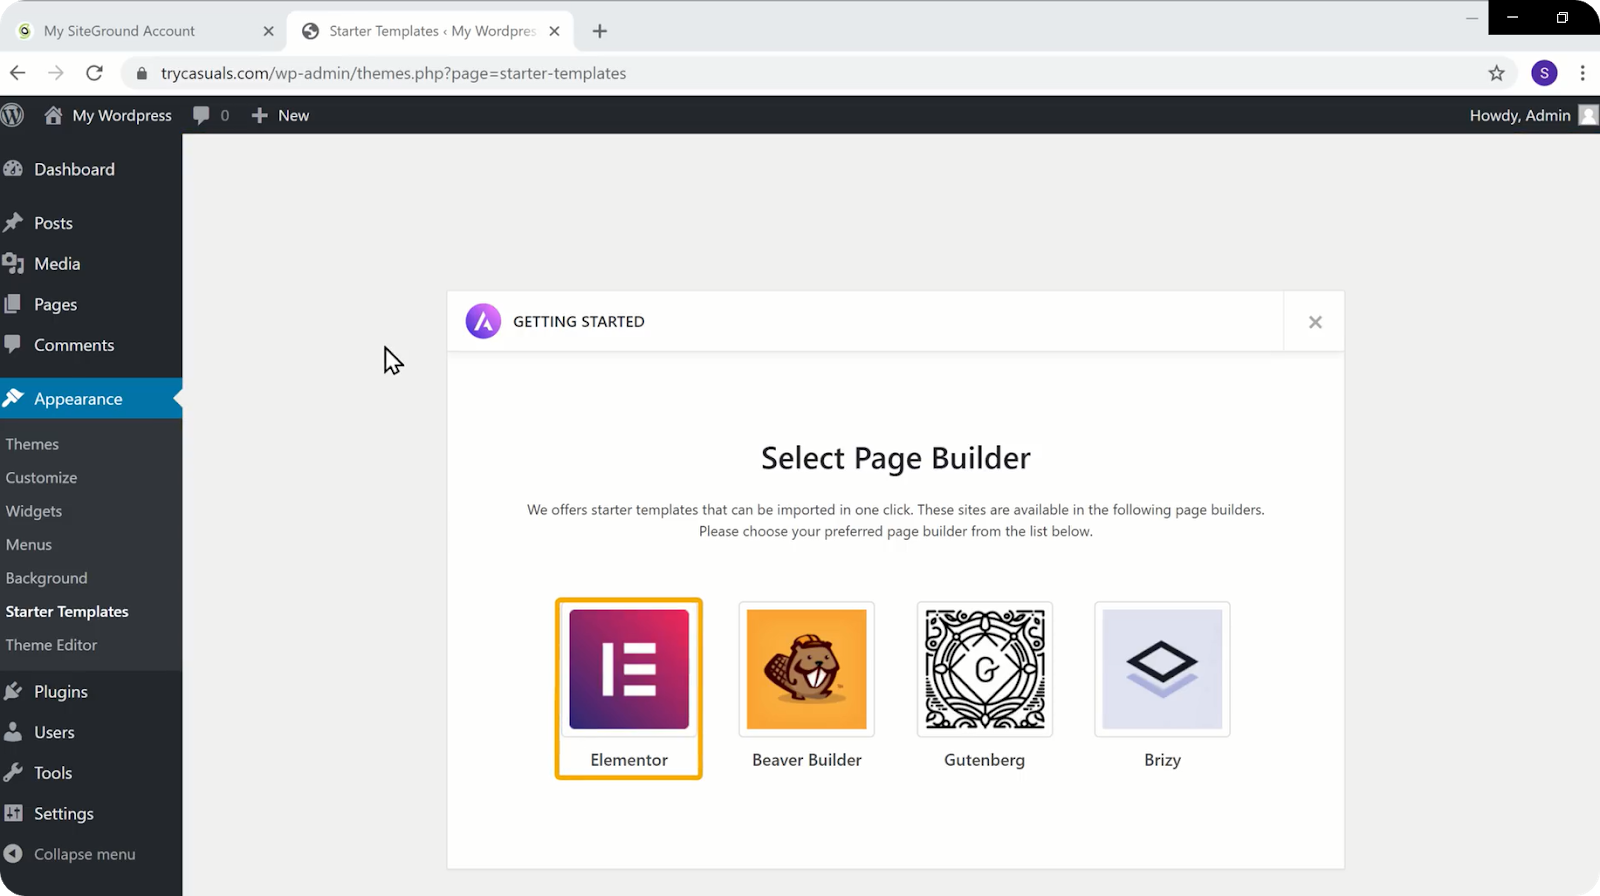 Choose Elementor page builder